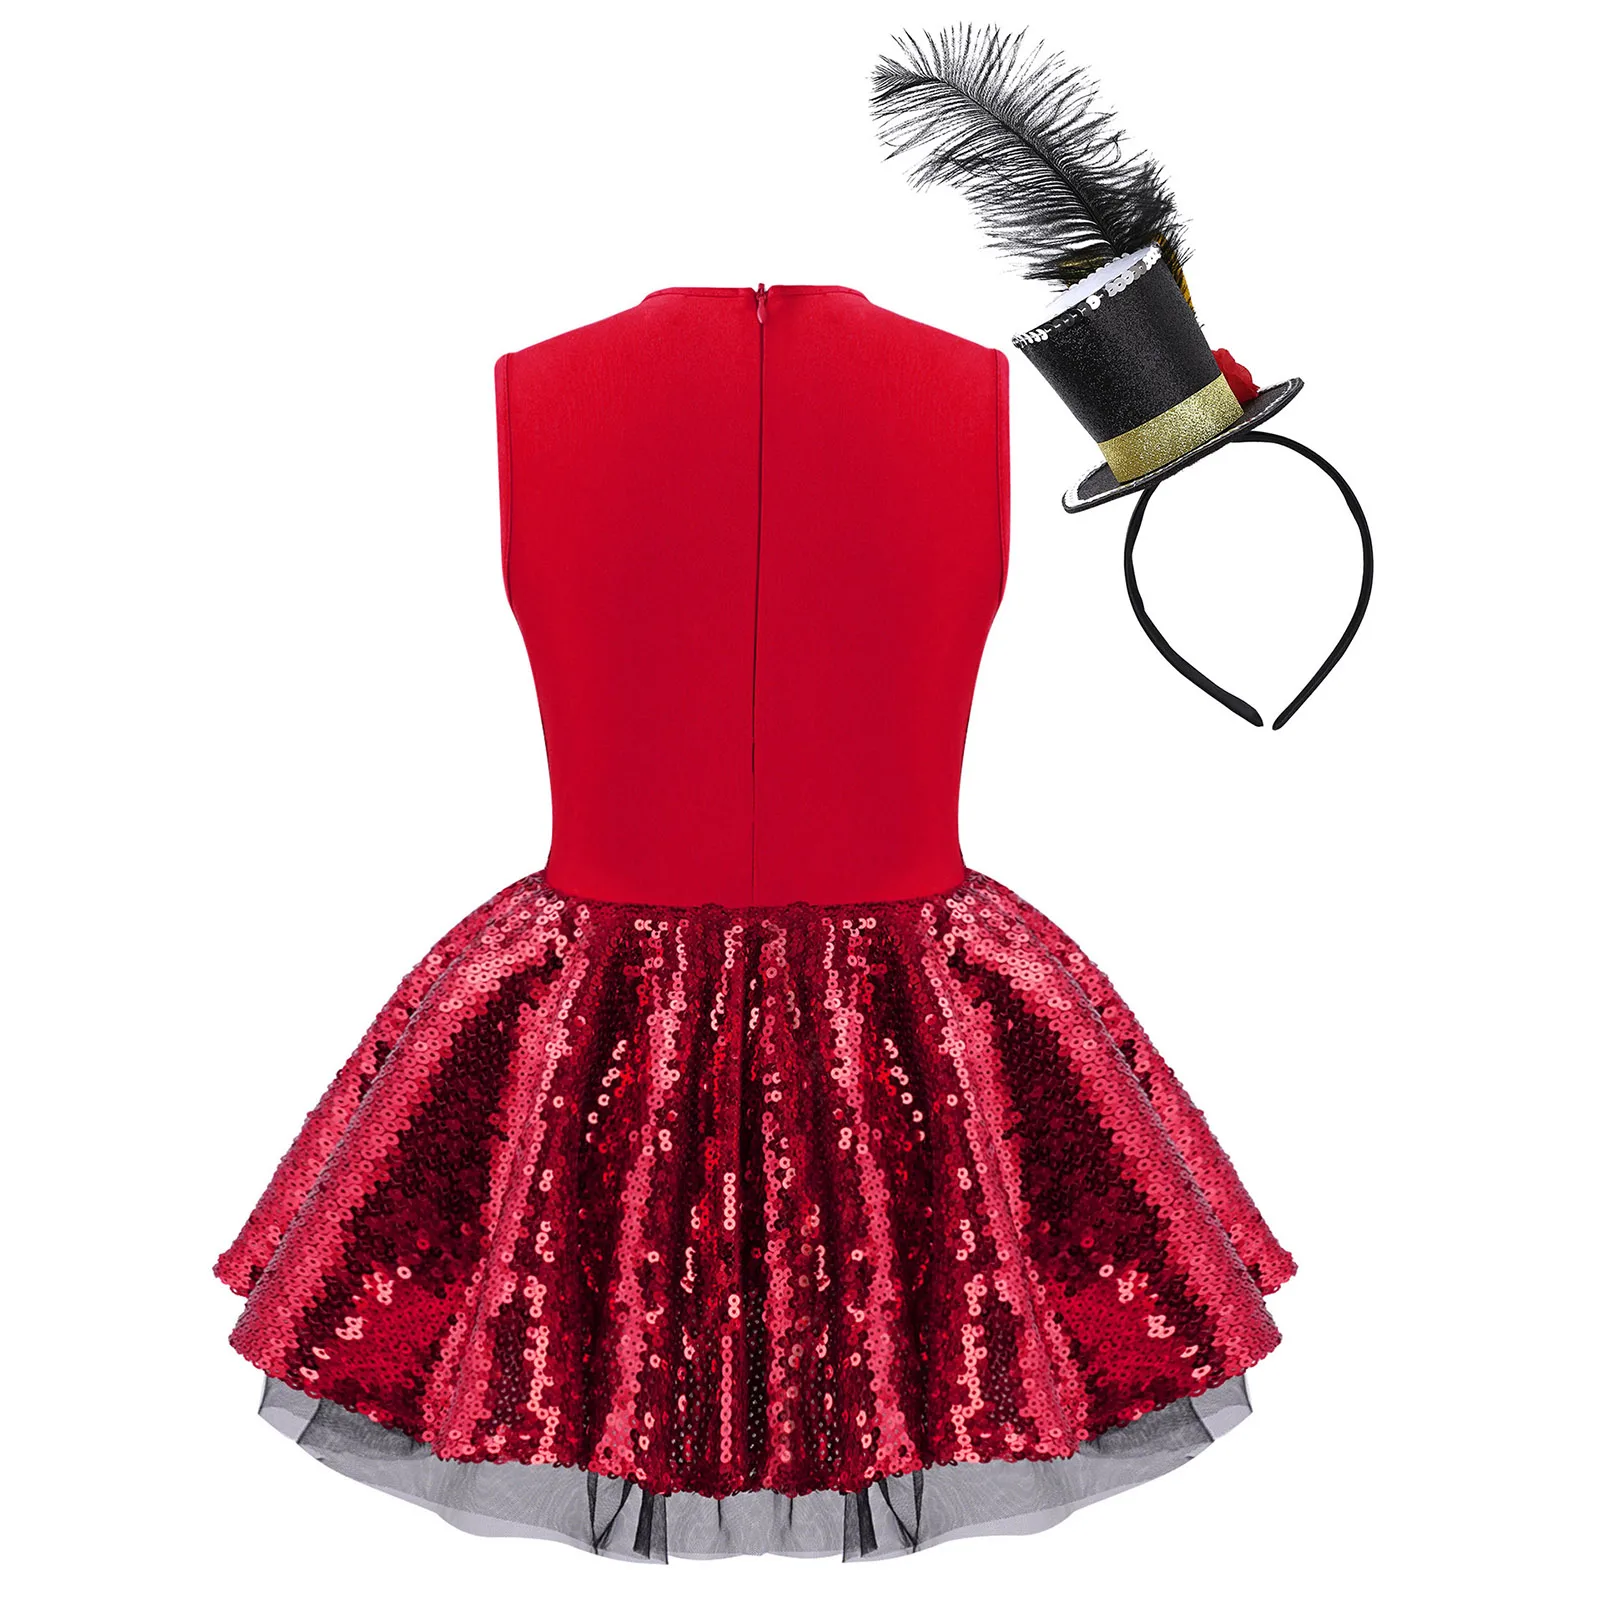 ילדים בנות נוצץ נצנצים ריקוד בלט השמלה האדומה Bowknot שרוולים חג המולד קרקס קרקס מפואר שמלה למעלה חצאית בגד גוף שמלה . ' - ' . 1